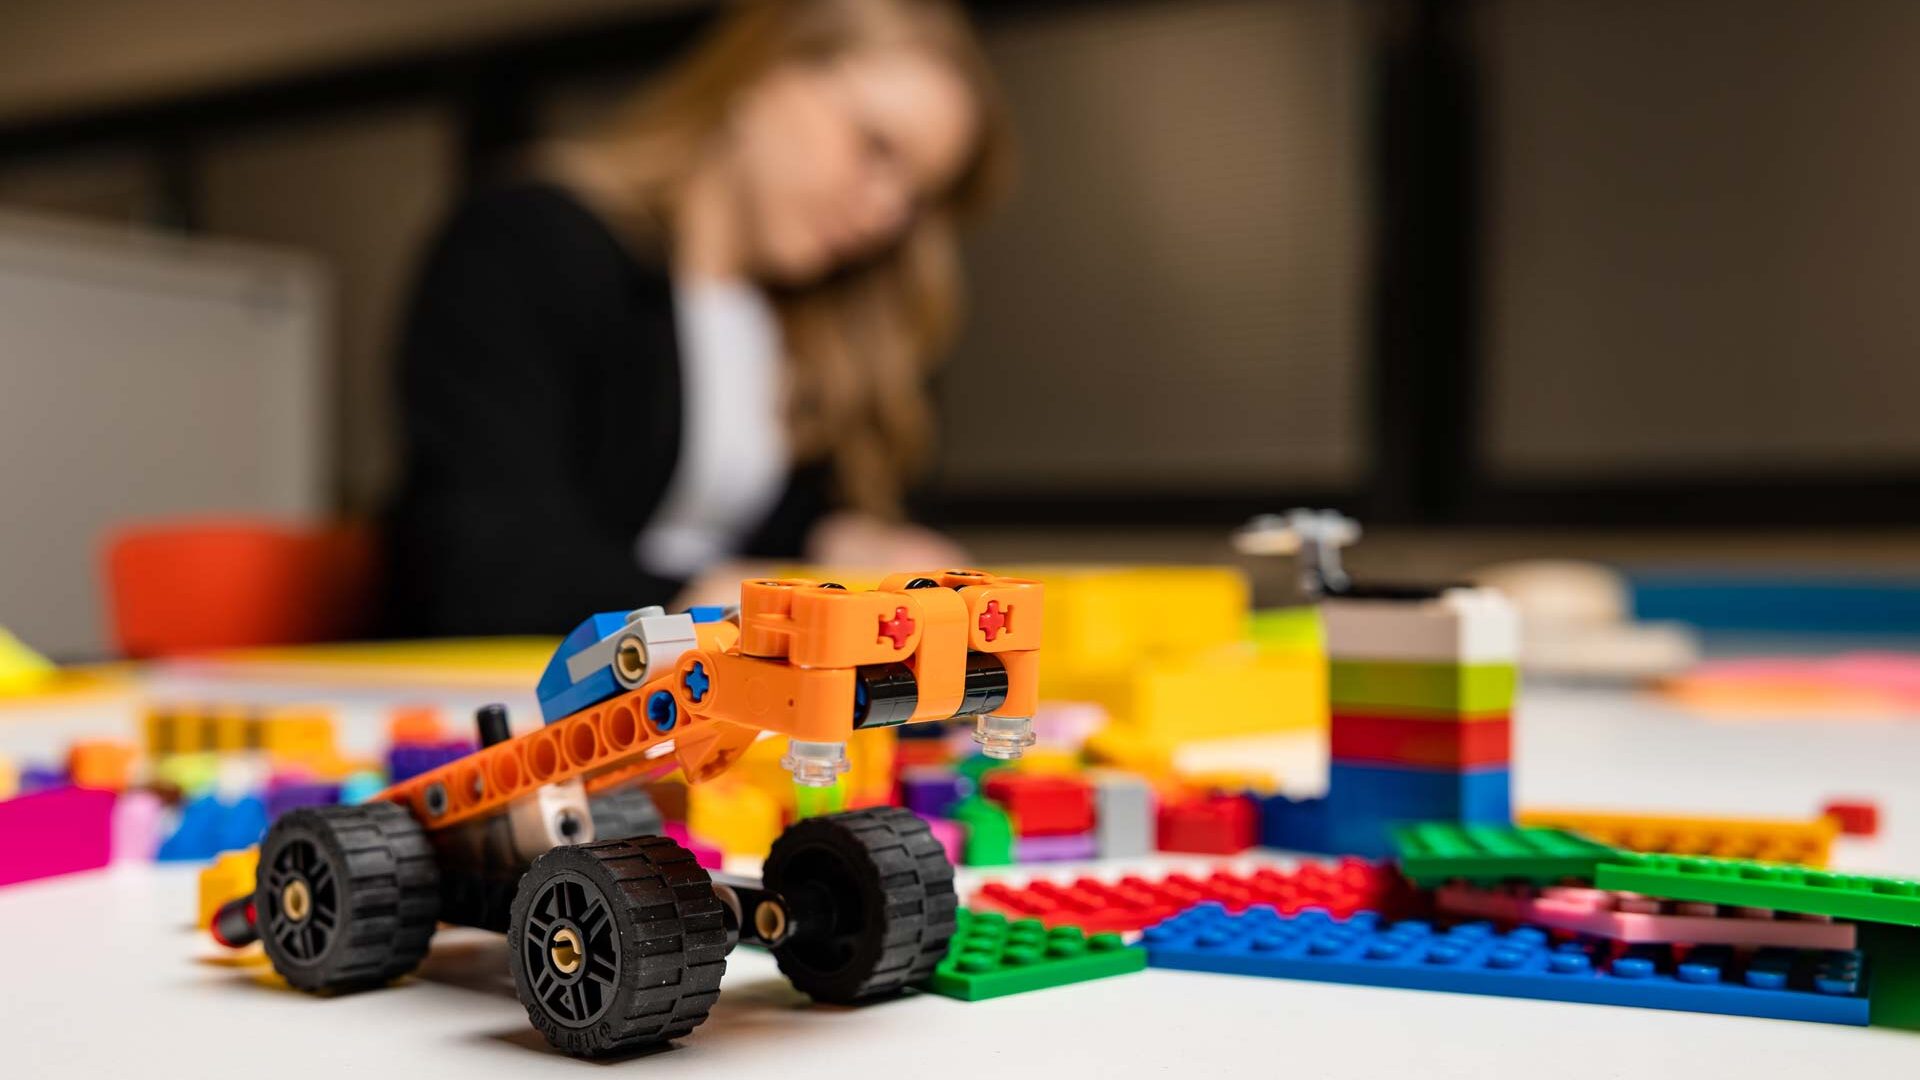 Legoauto ja taustalla opiskelija.